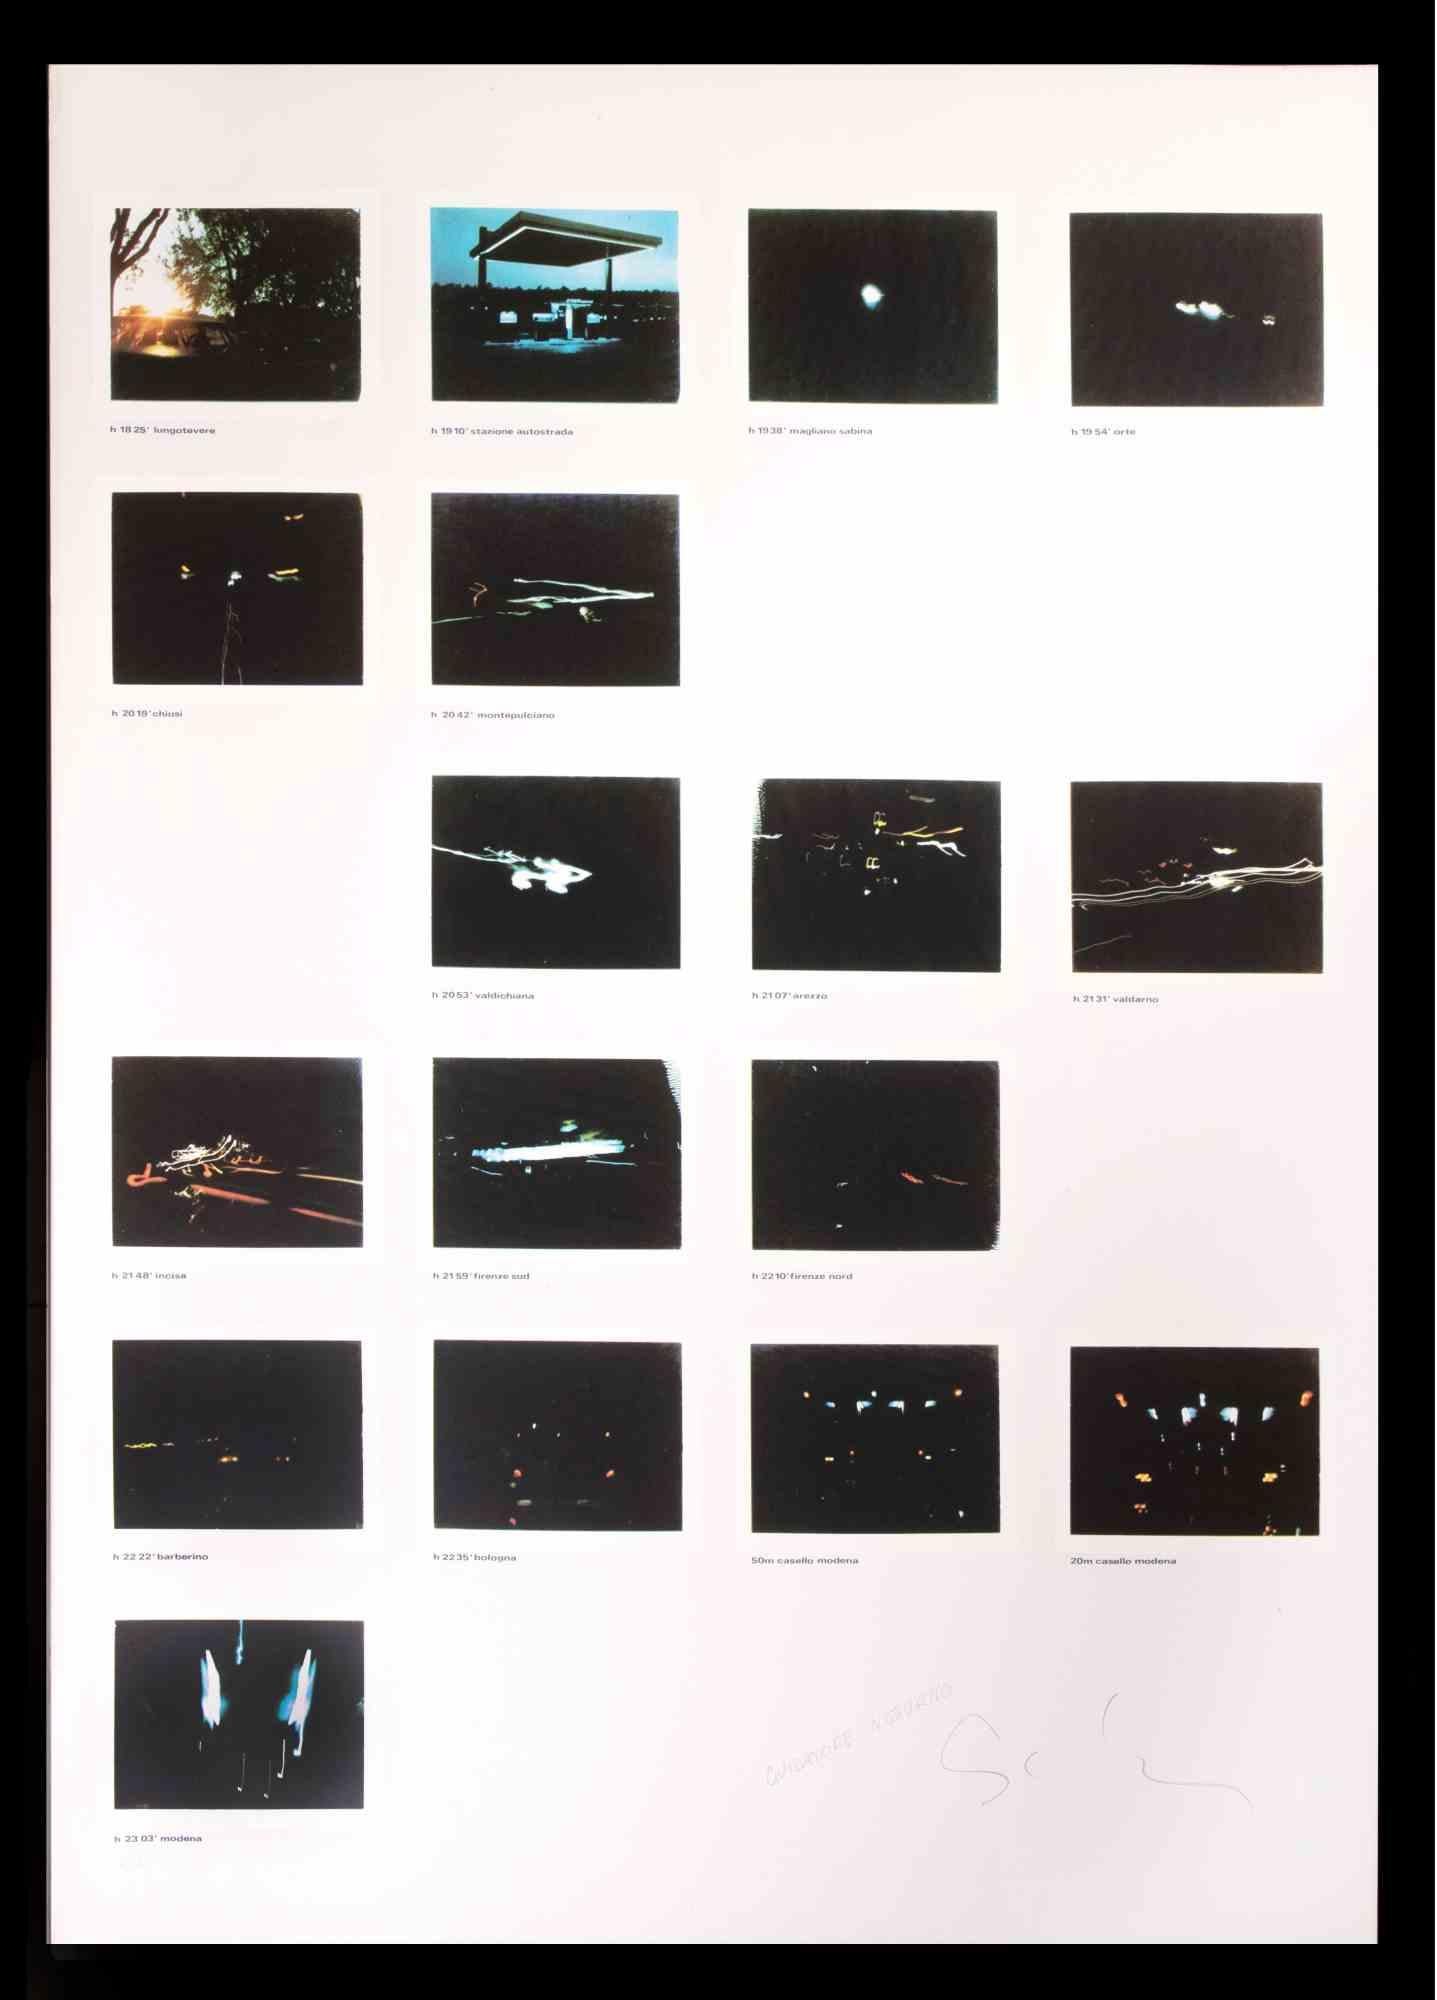 Night Driver est une œuvre d'art contemporain réalisée par Mario Schifano dans les années 1970.

Signé à la main et titré dans la marge inférieure.

Numéroté en bas à gauche. Edition 57/60.

Bonnes conditions.

L'œuvre représente 17 photographies